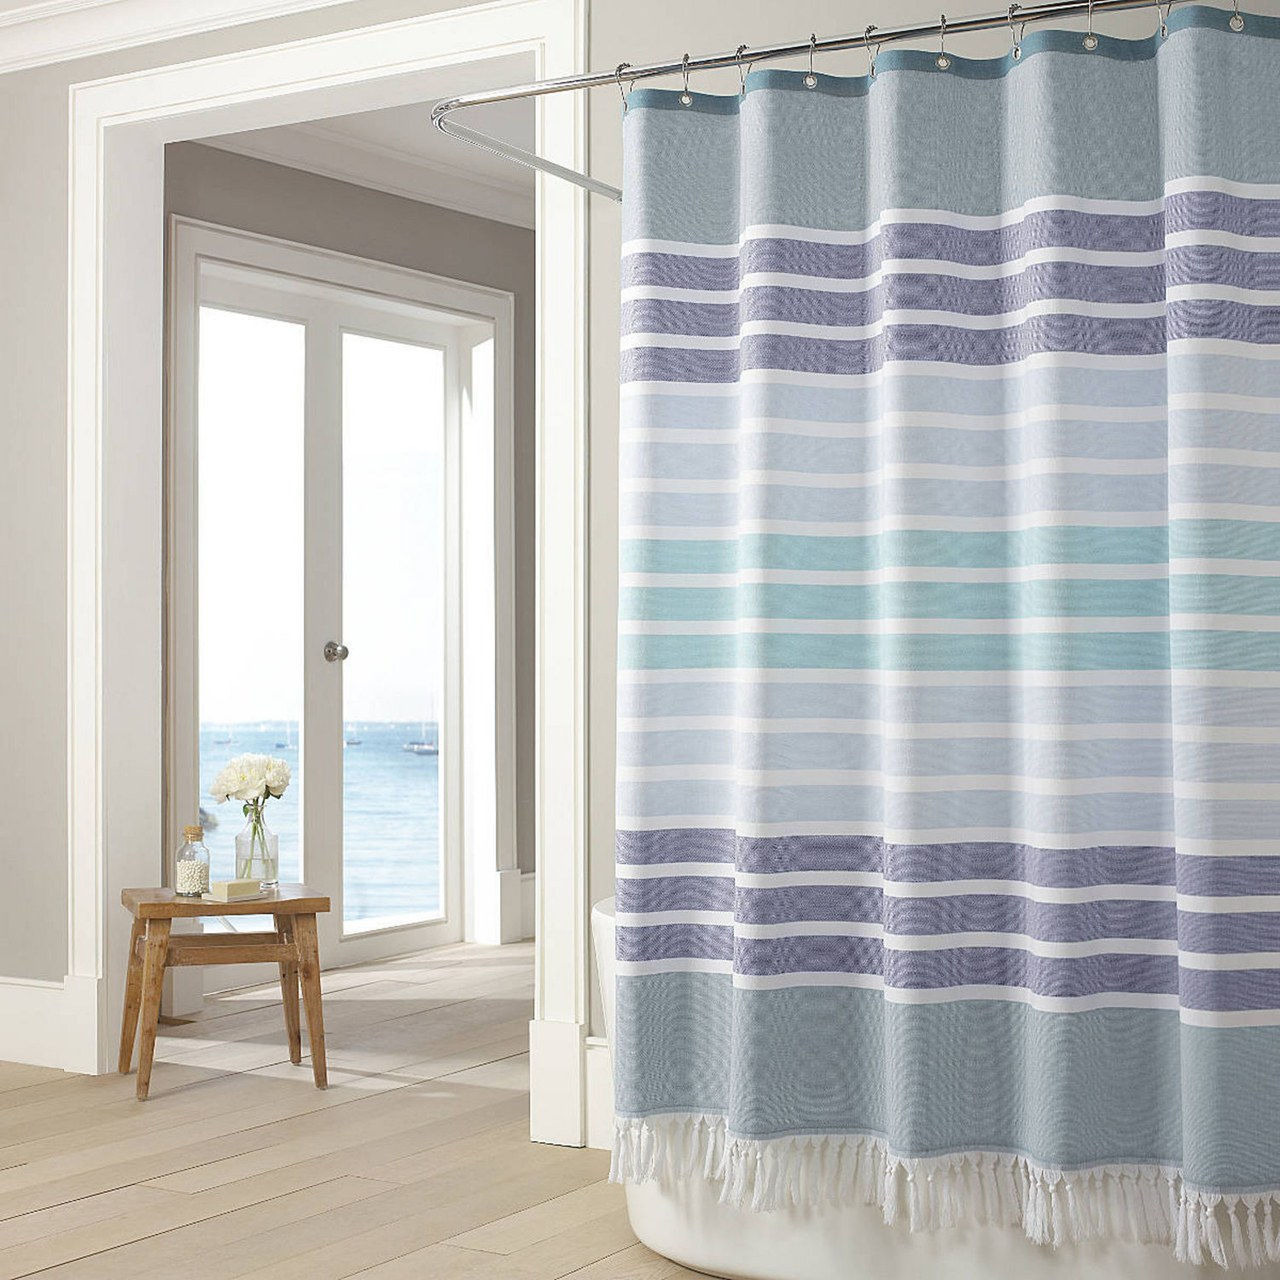 02 interior design bathroom shower curtains courtesy vendors